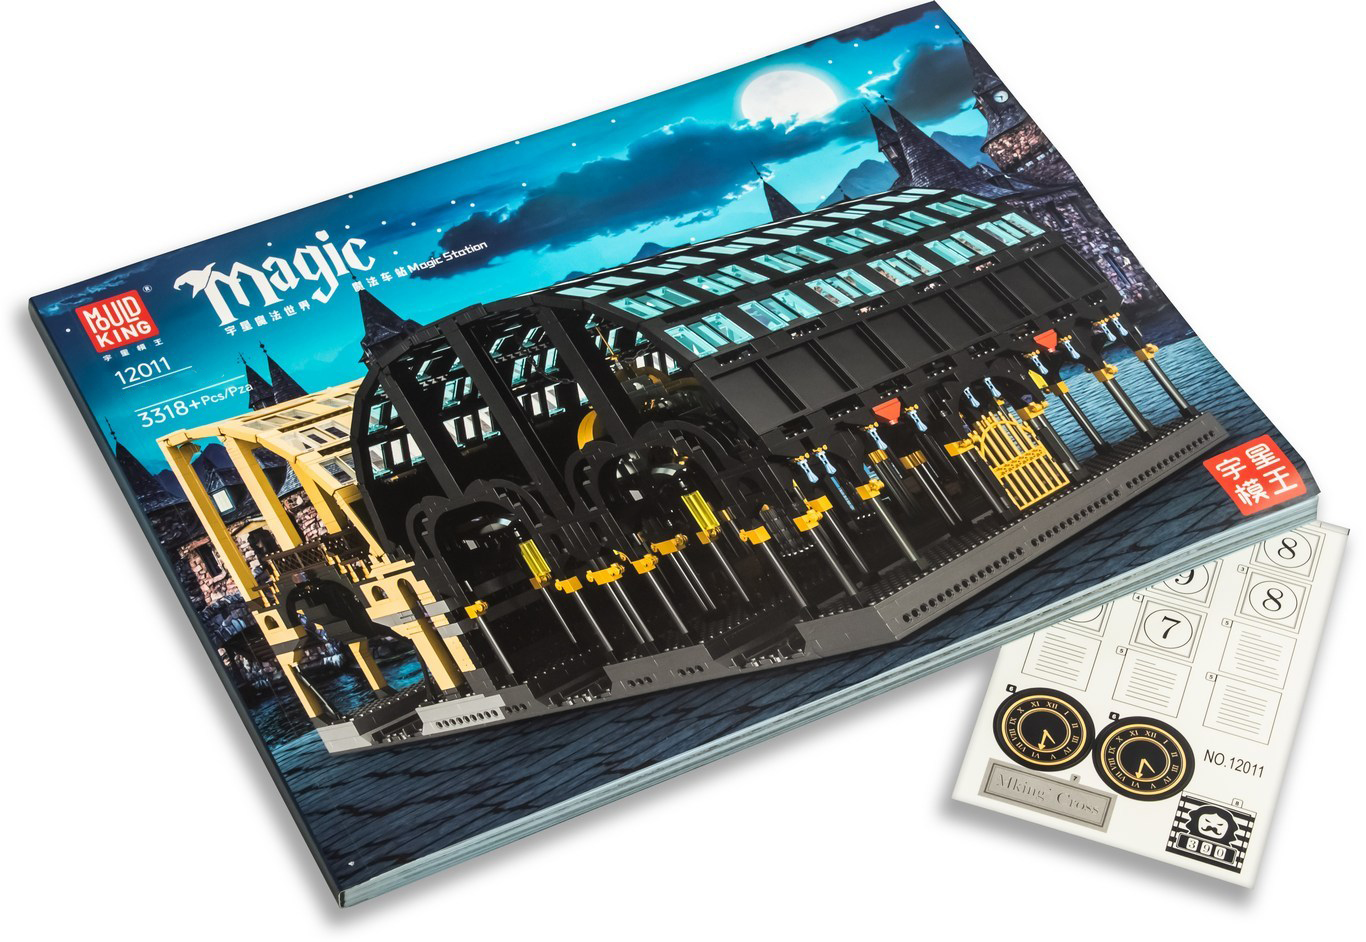 Конструктор Mould King «Вокзал Кингс-Кросс — платформа в Хогвартс» 12011 (Harry Potter) / 3318 деталей